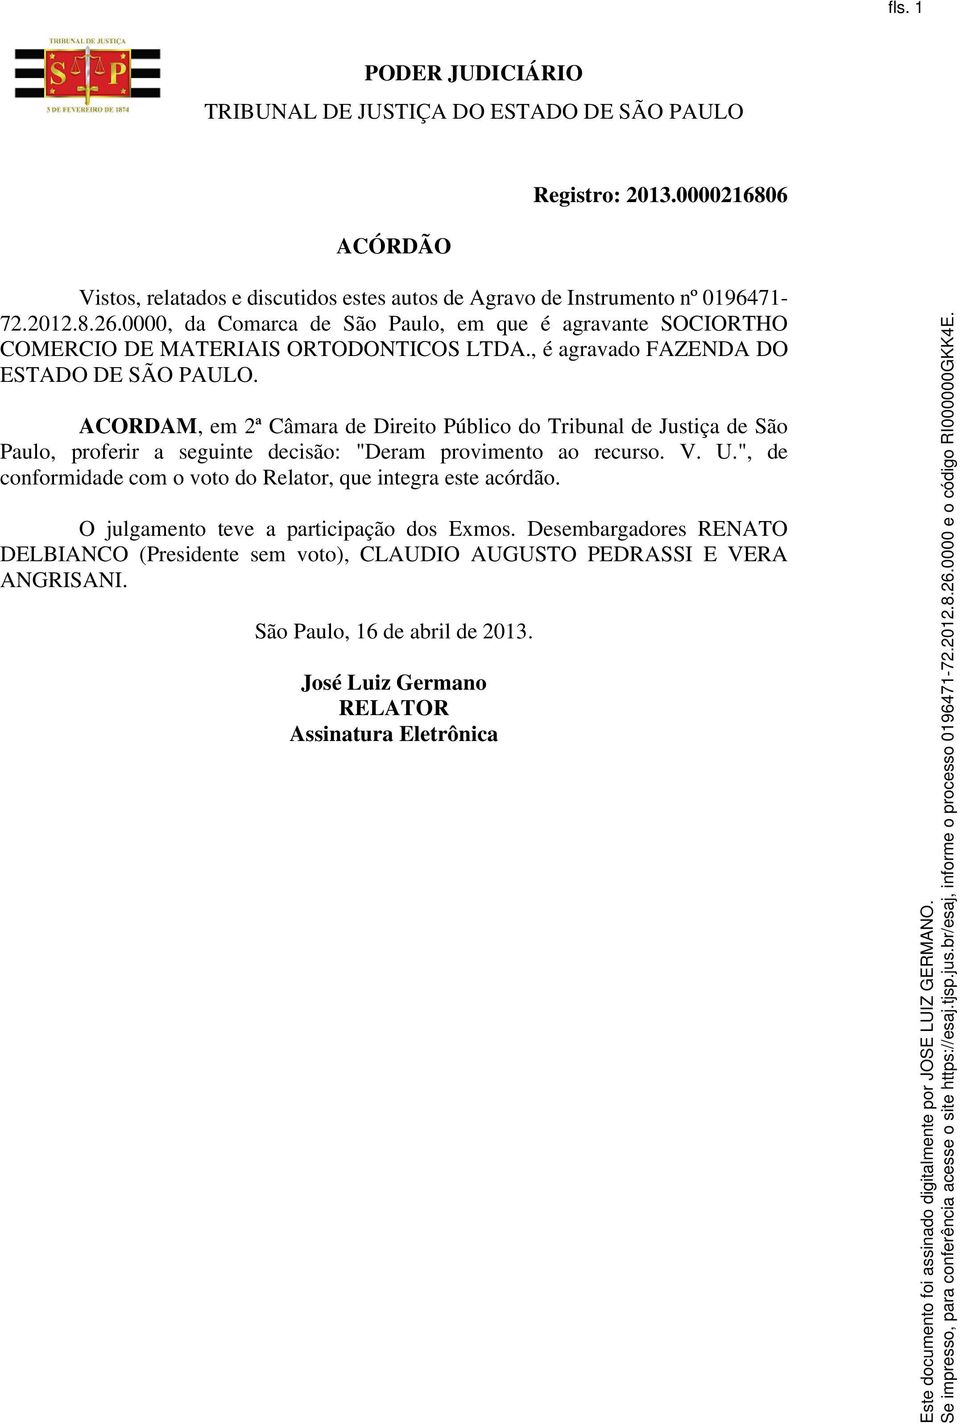 ACORDAM, em 2ª Câmara de Direito Público do Tribunal de Justiça de São Paulo, proferir a seguinte decisão: "Deram provimento ao recurso. V. U.